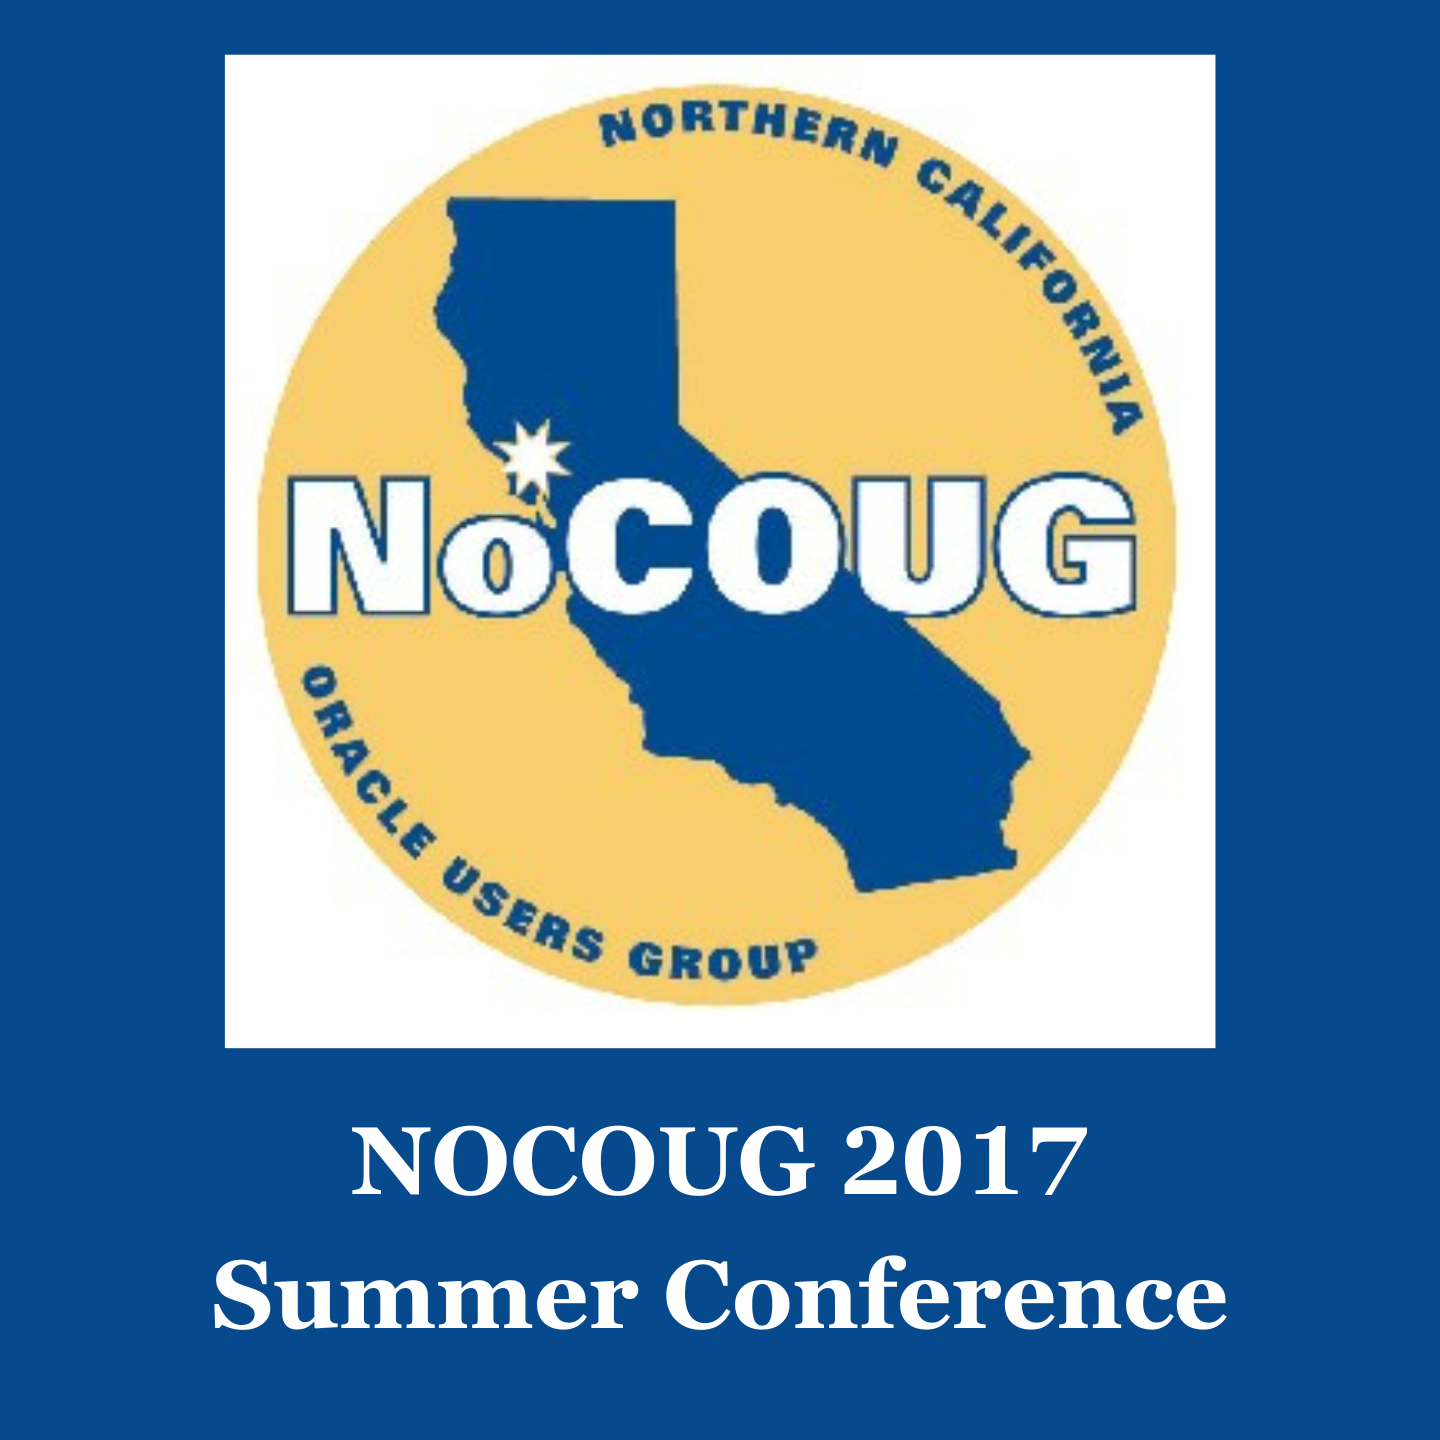 NOCOUG 2017 Summer Conference